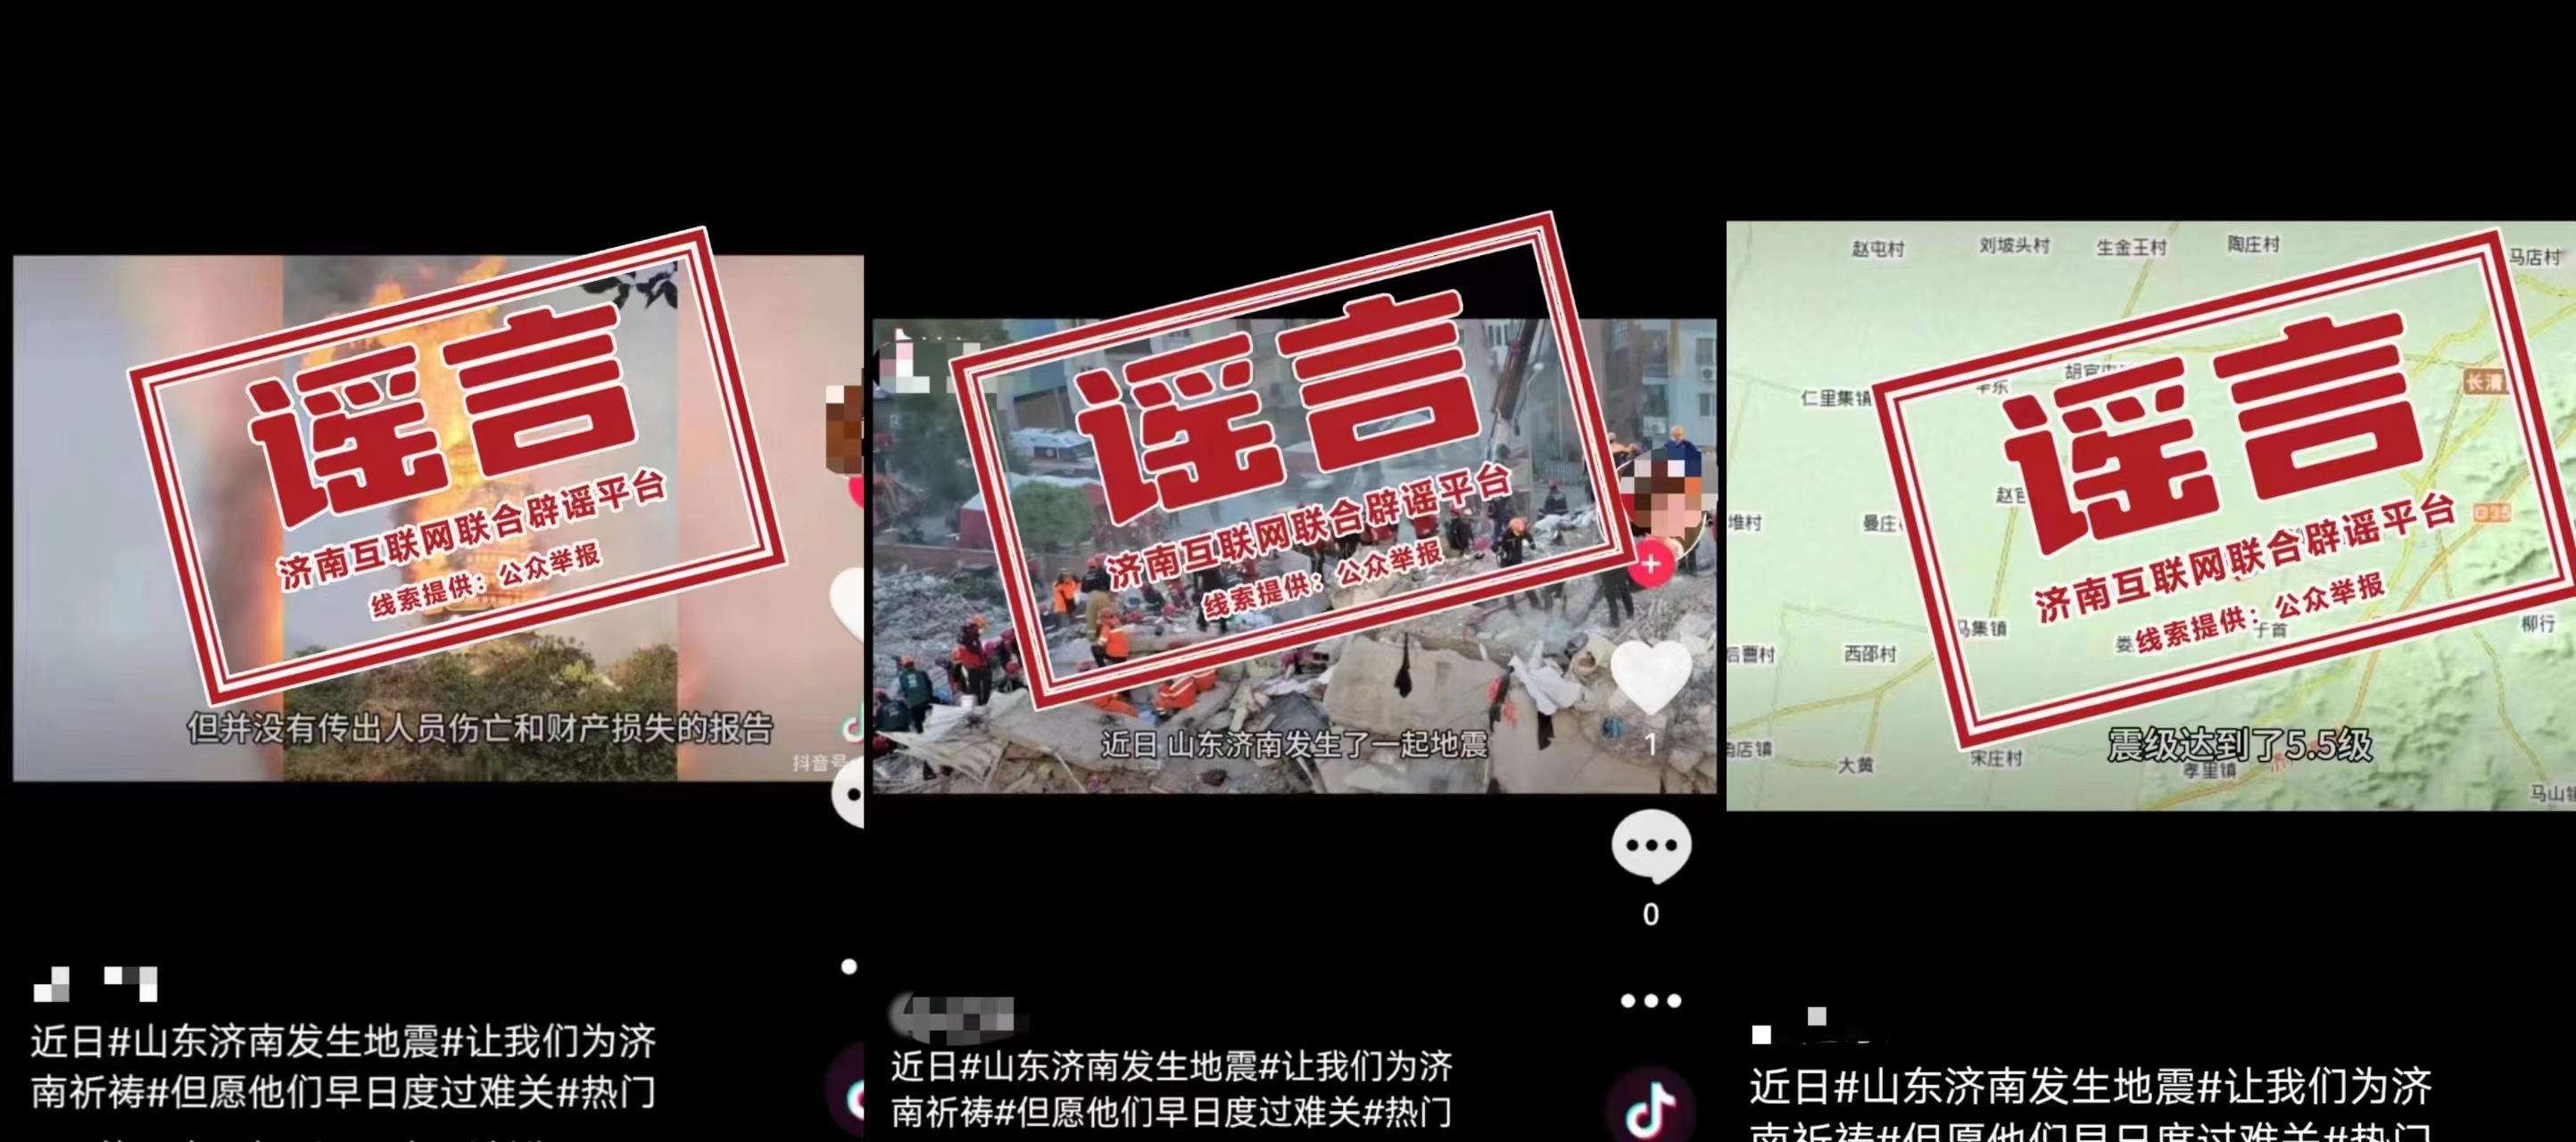 发布谣言的社交平台账号内容 图源�：中国互联网联合辟谣平台